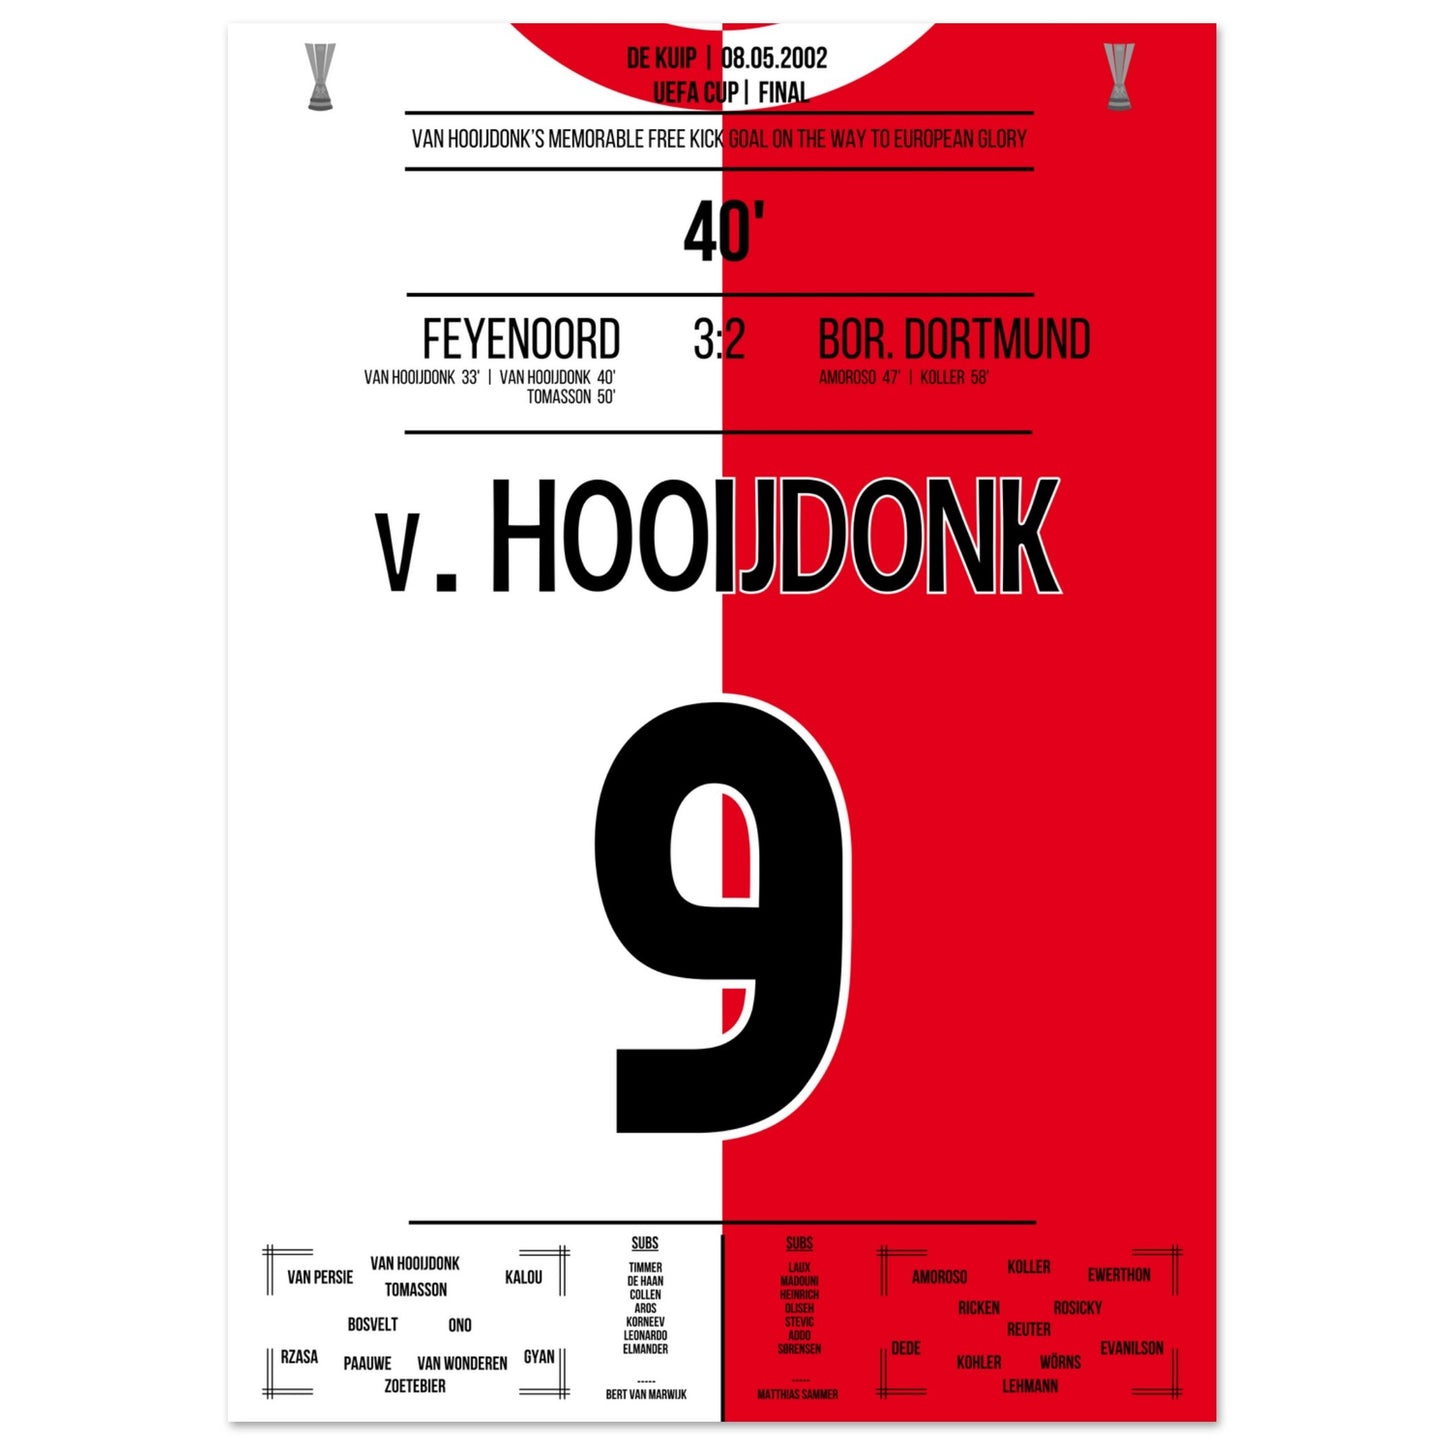 Van Hooijdonk's Freistosstor bei Feyenoord's Europapokaltriumph 2002